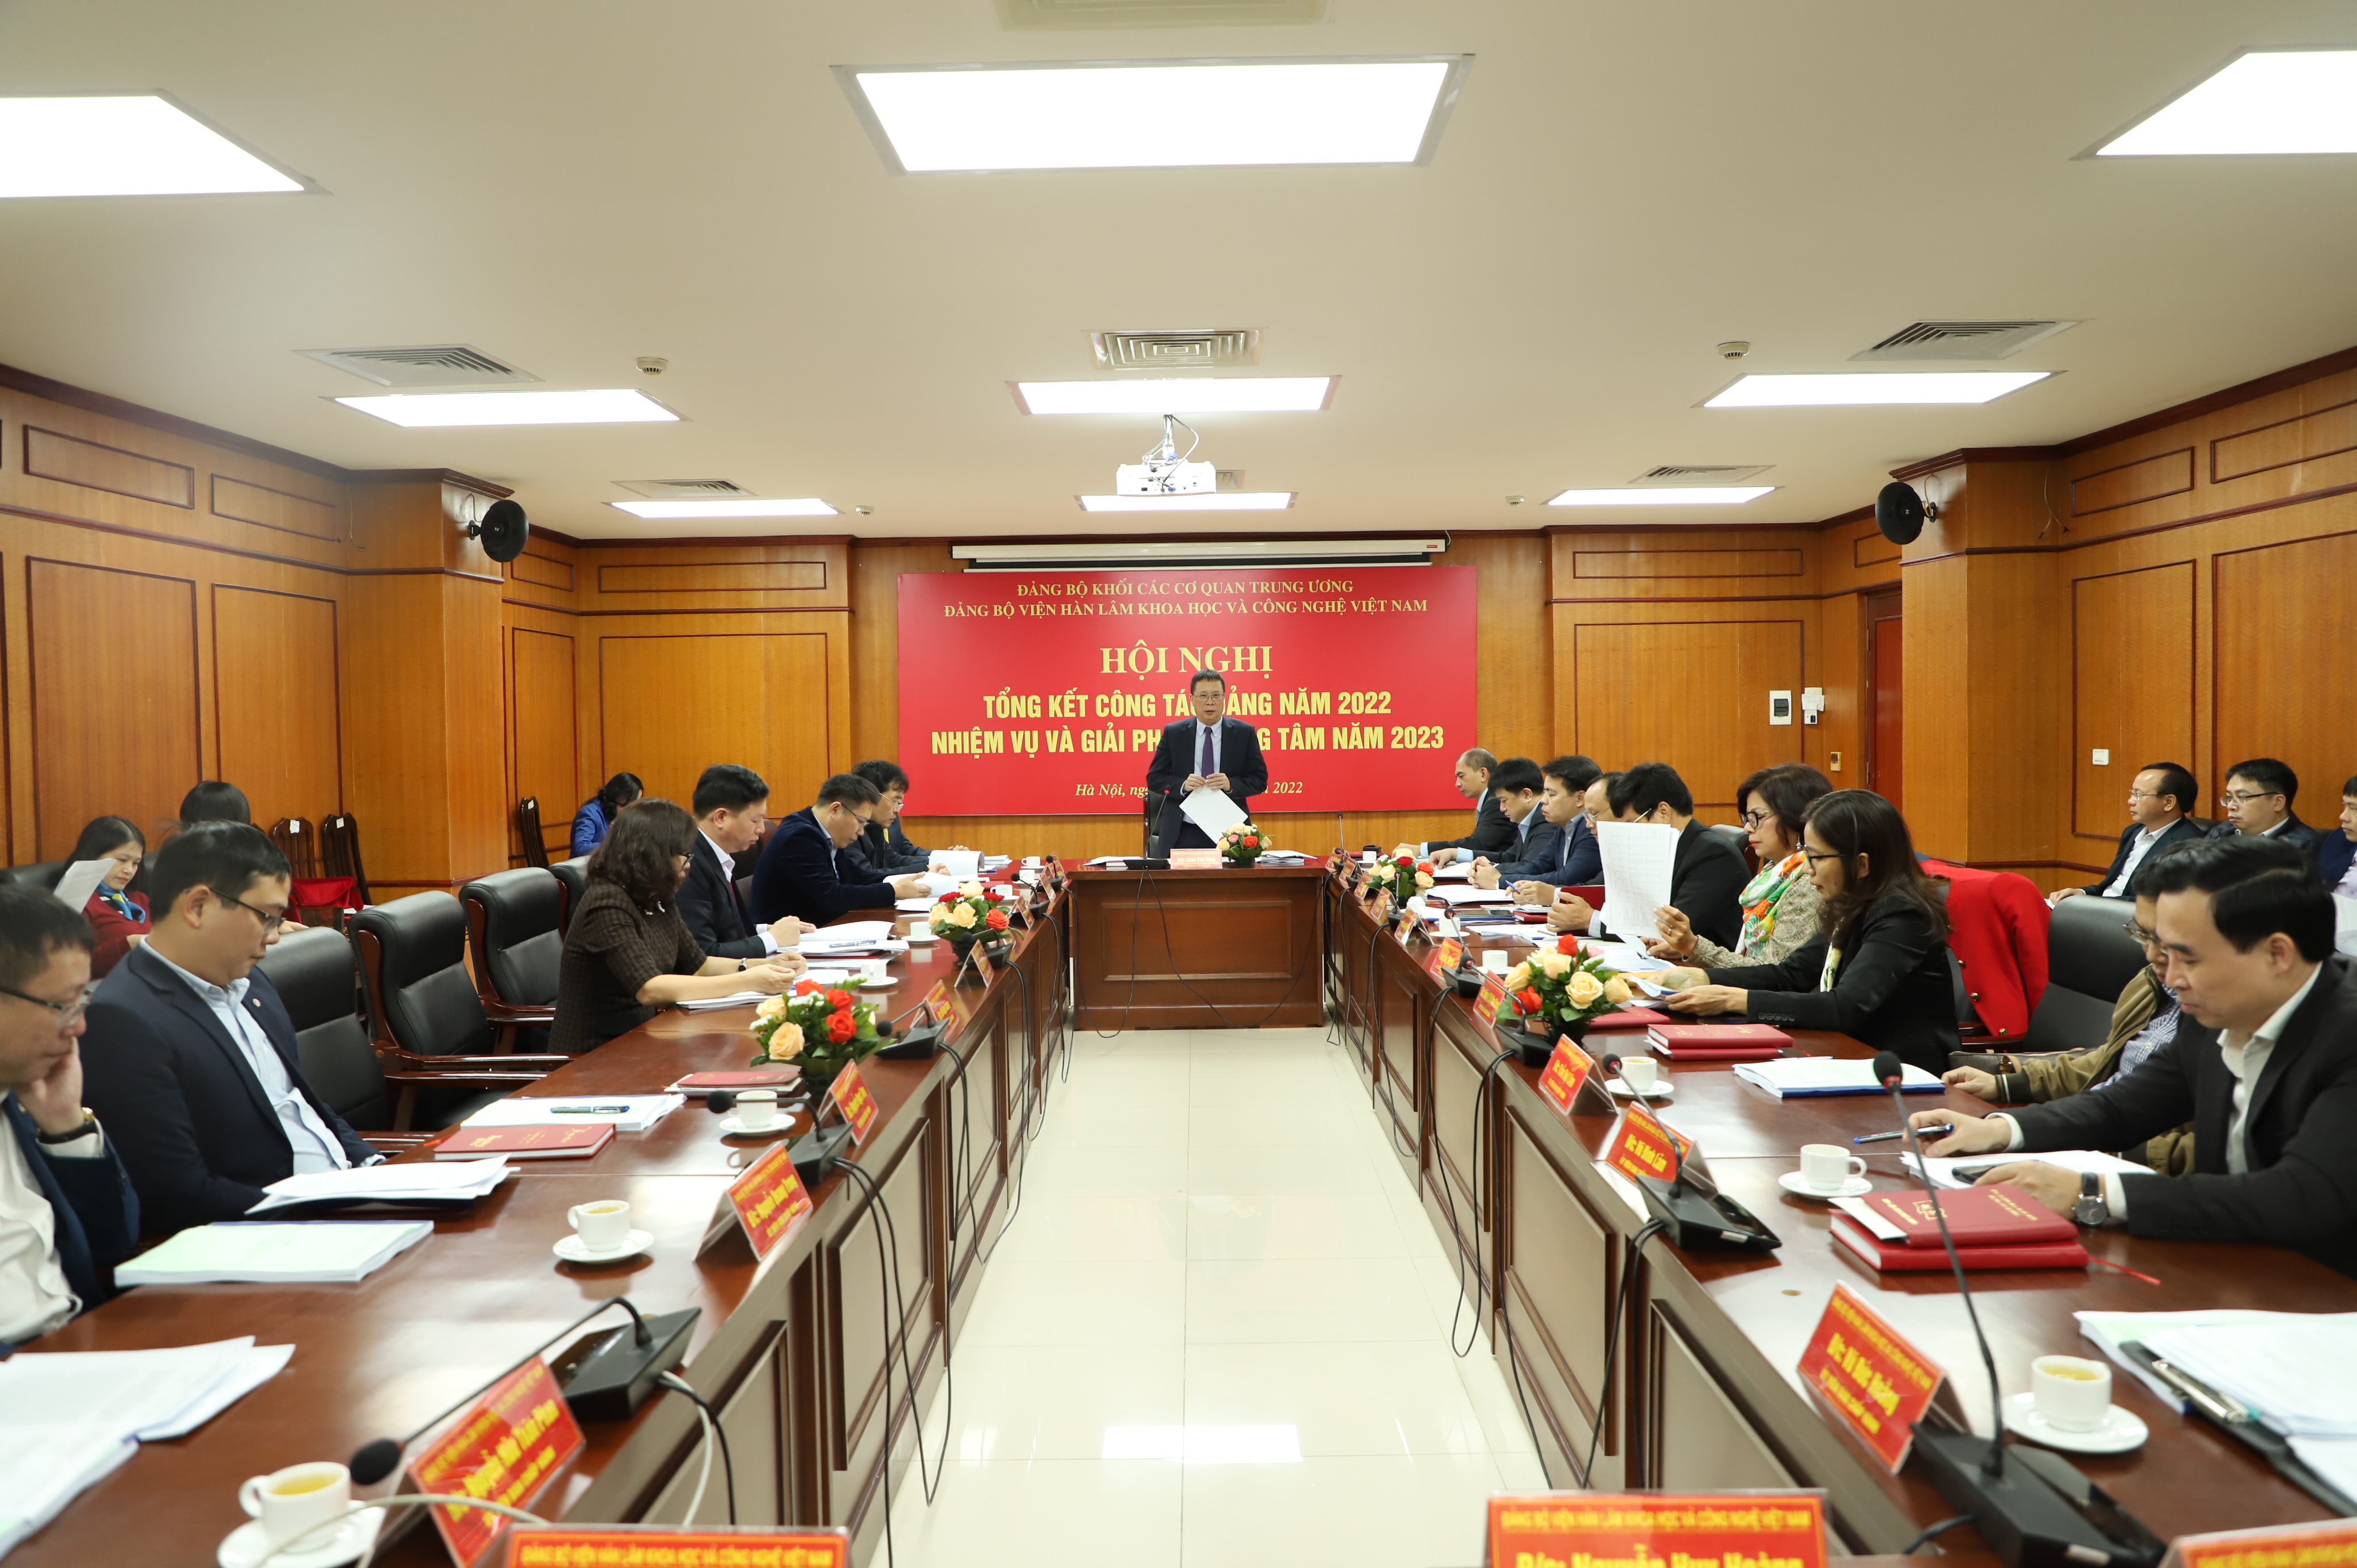 Tổng kết công tác Đảng năm 2022, nhiệm vụ và giải pháp trọng tâm năm 2023 và Hội nghị Ban chấp hành Đảng bộ Viện Hàn lâm Khoa học và Công nghệ Việt Nam